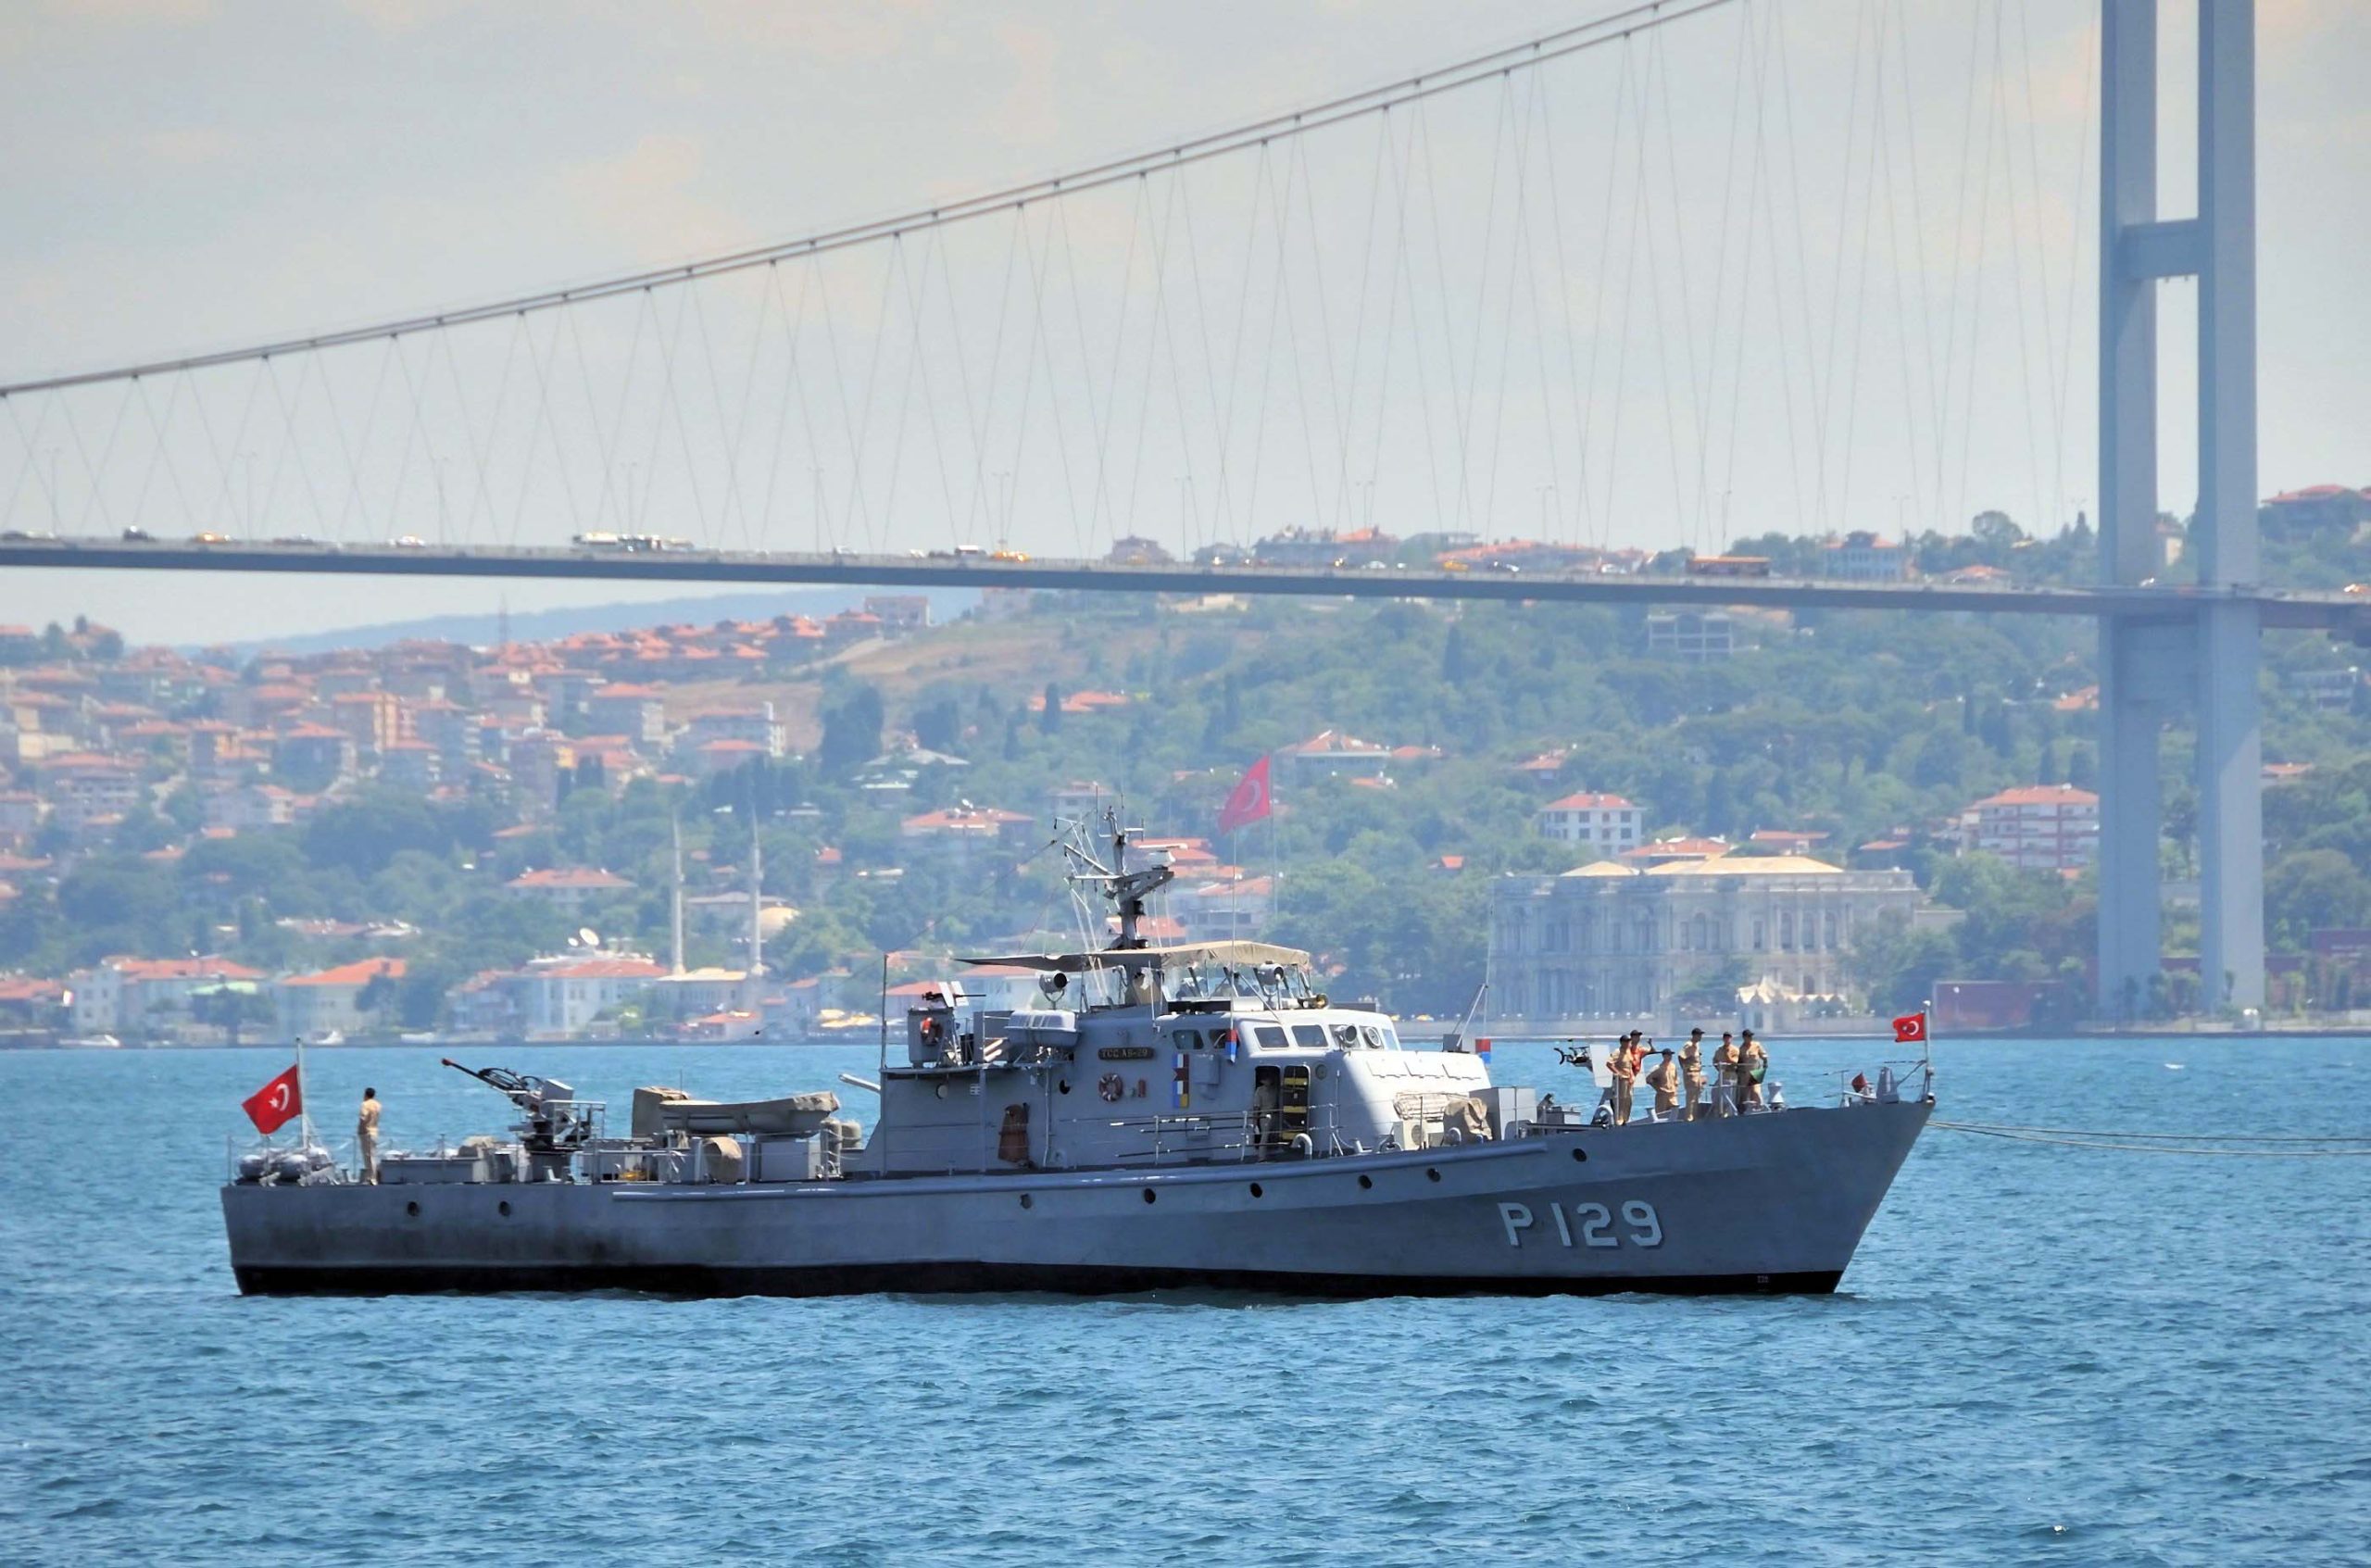 Τουρκία: Κλειστός ο Βόσπορος και στις 2 κατευθύνσεις λόγω στρατιωτικών ασκήσεων